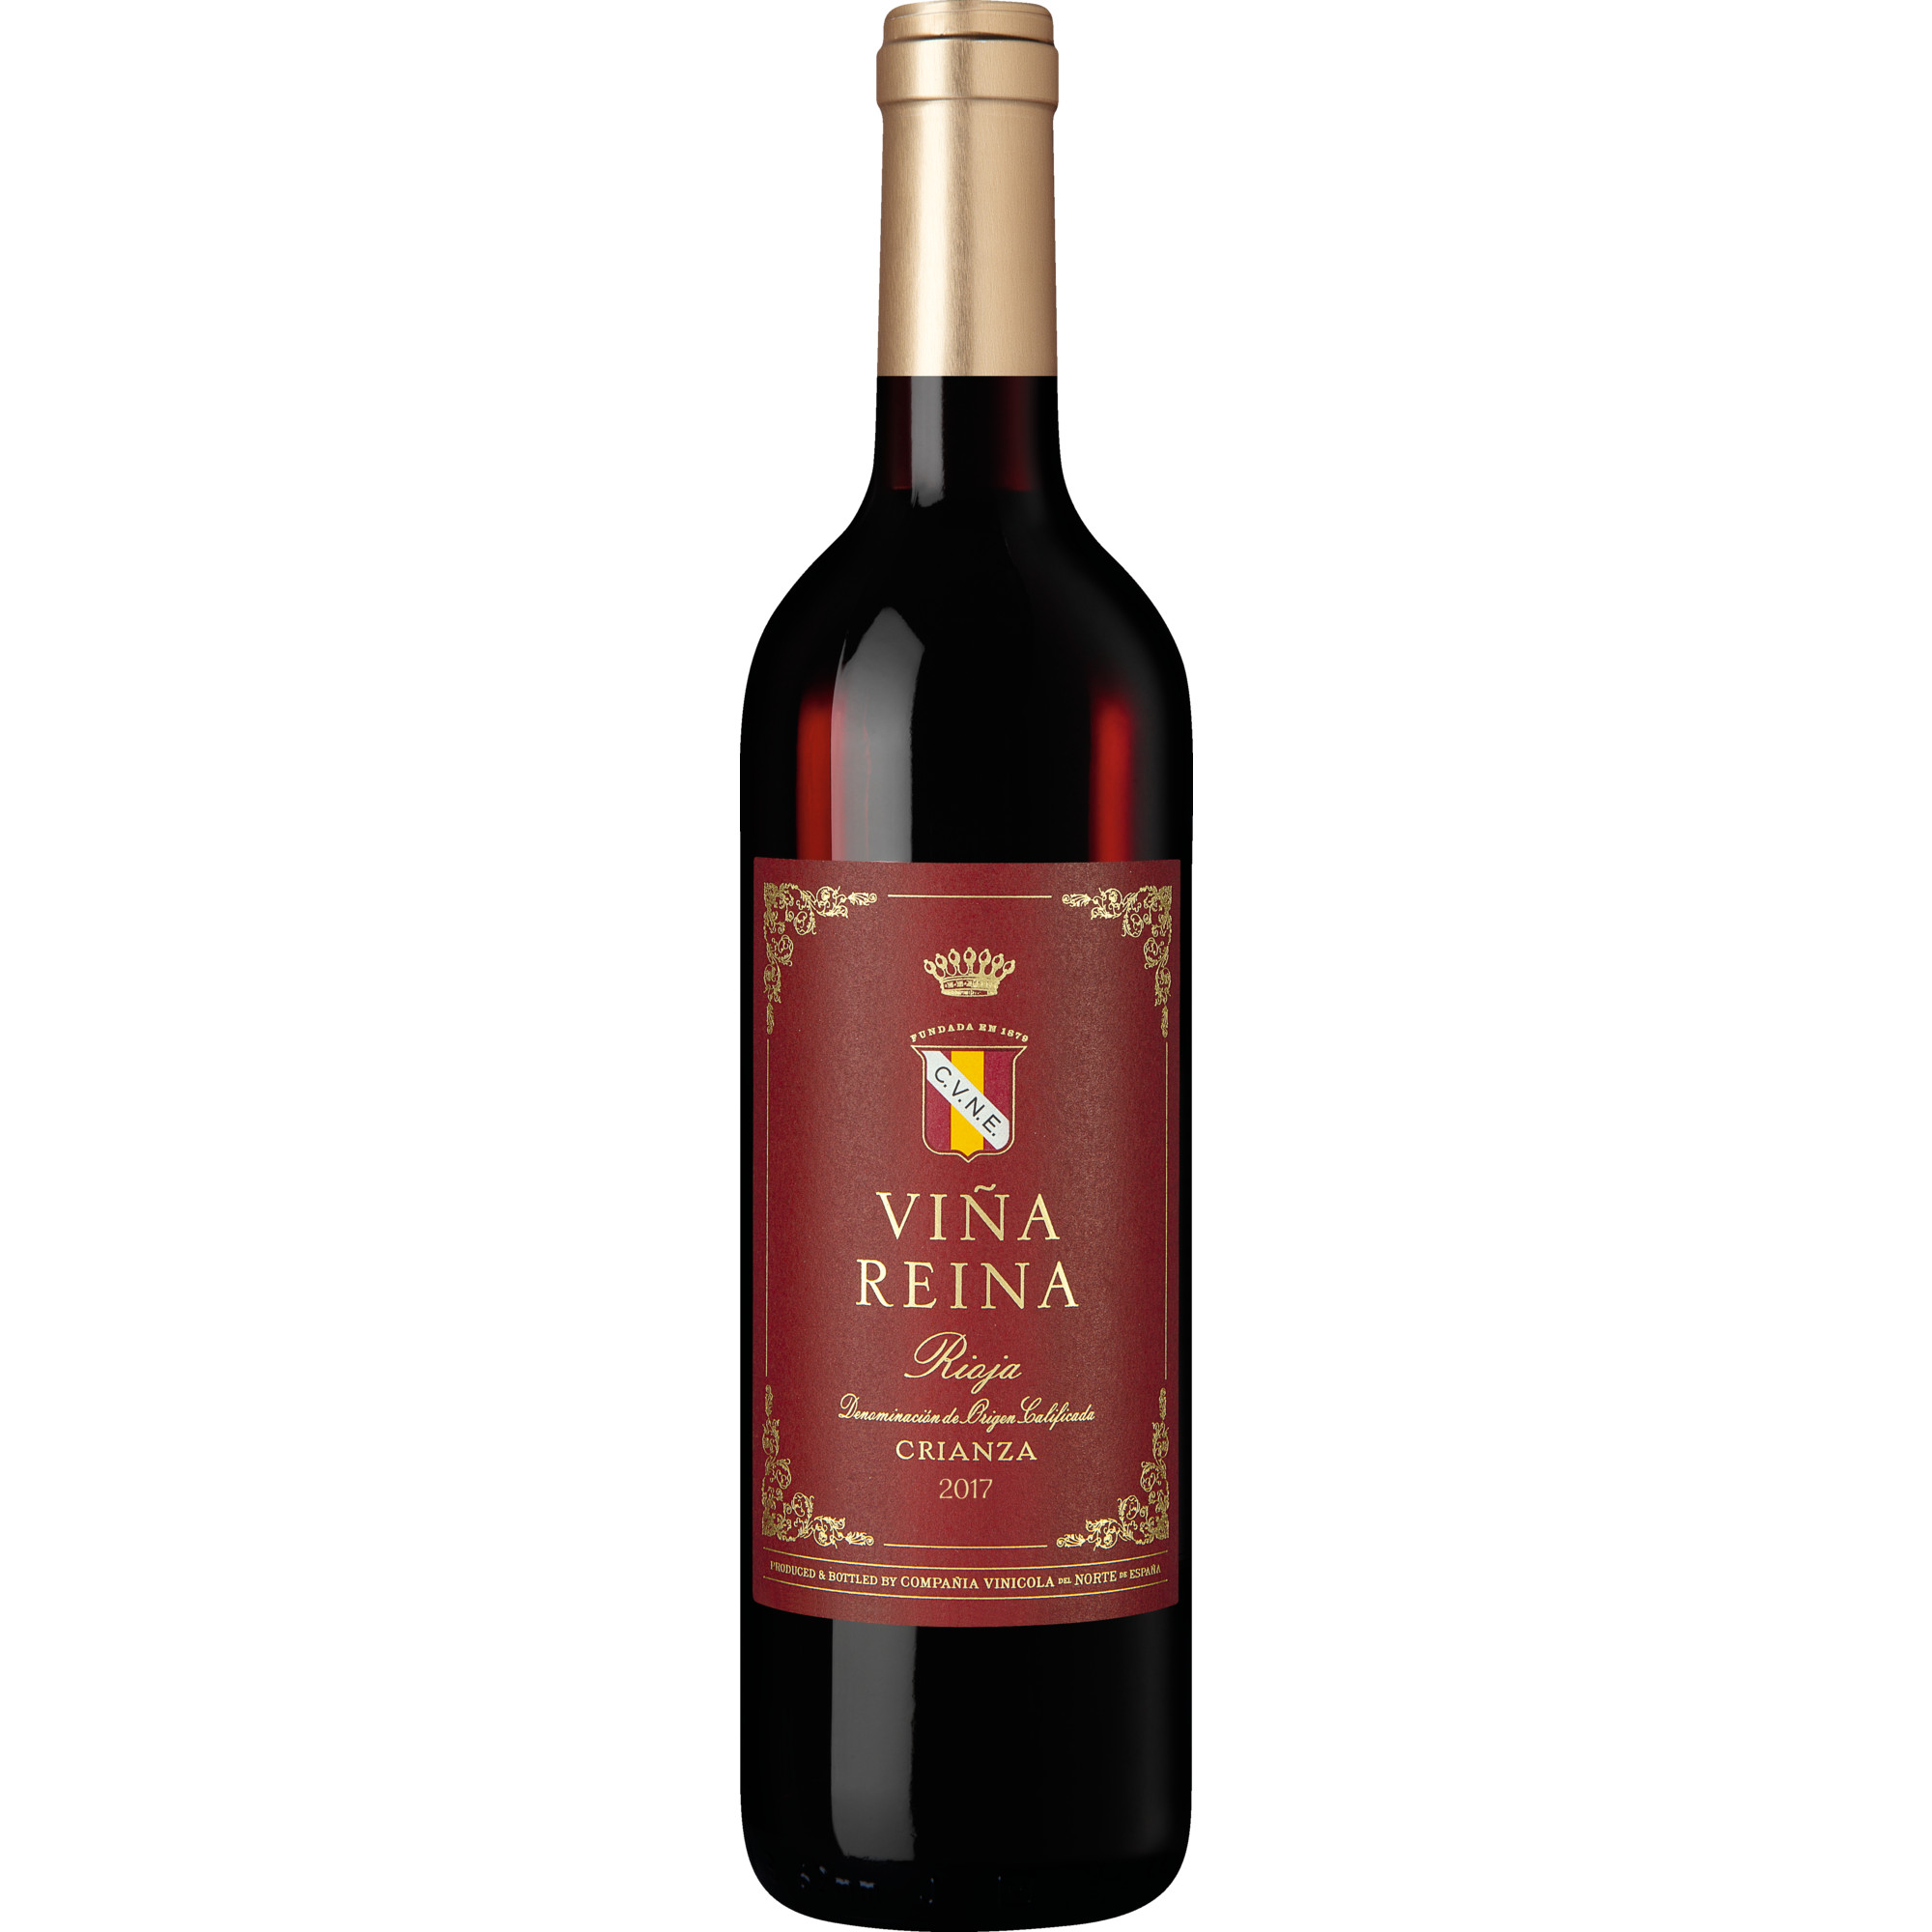 2017 CVNE Viña Reina Rioja Crianza